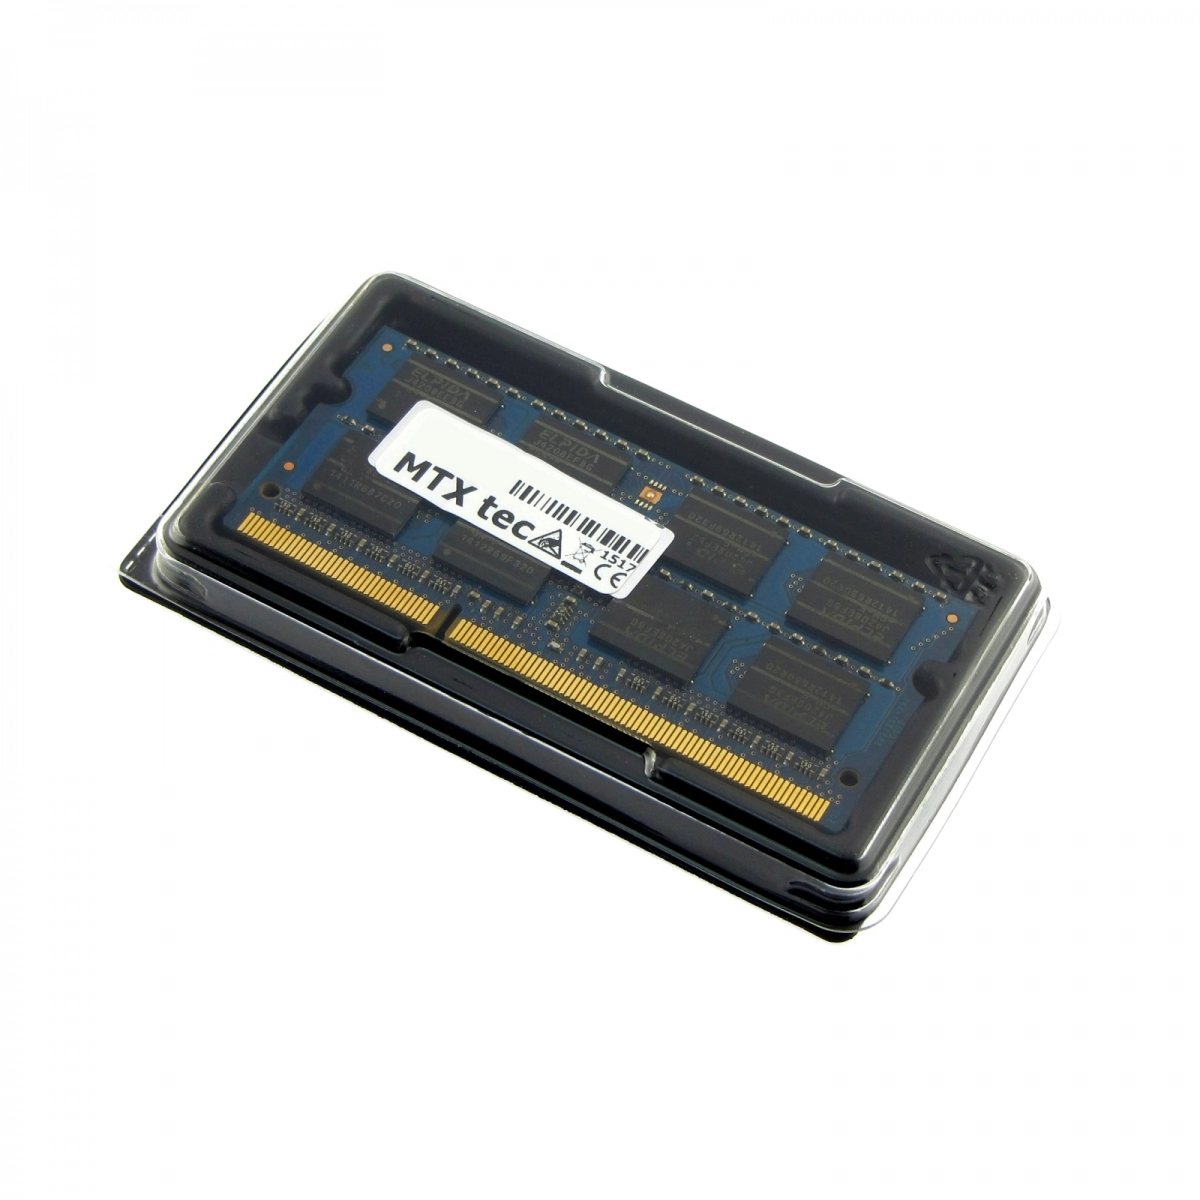 MTXtec Arbeitsspeicher 4 GB RAM für SAMSUNG R780-Hemily